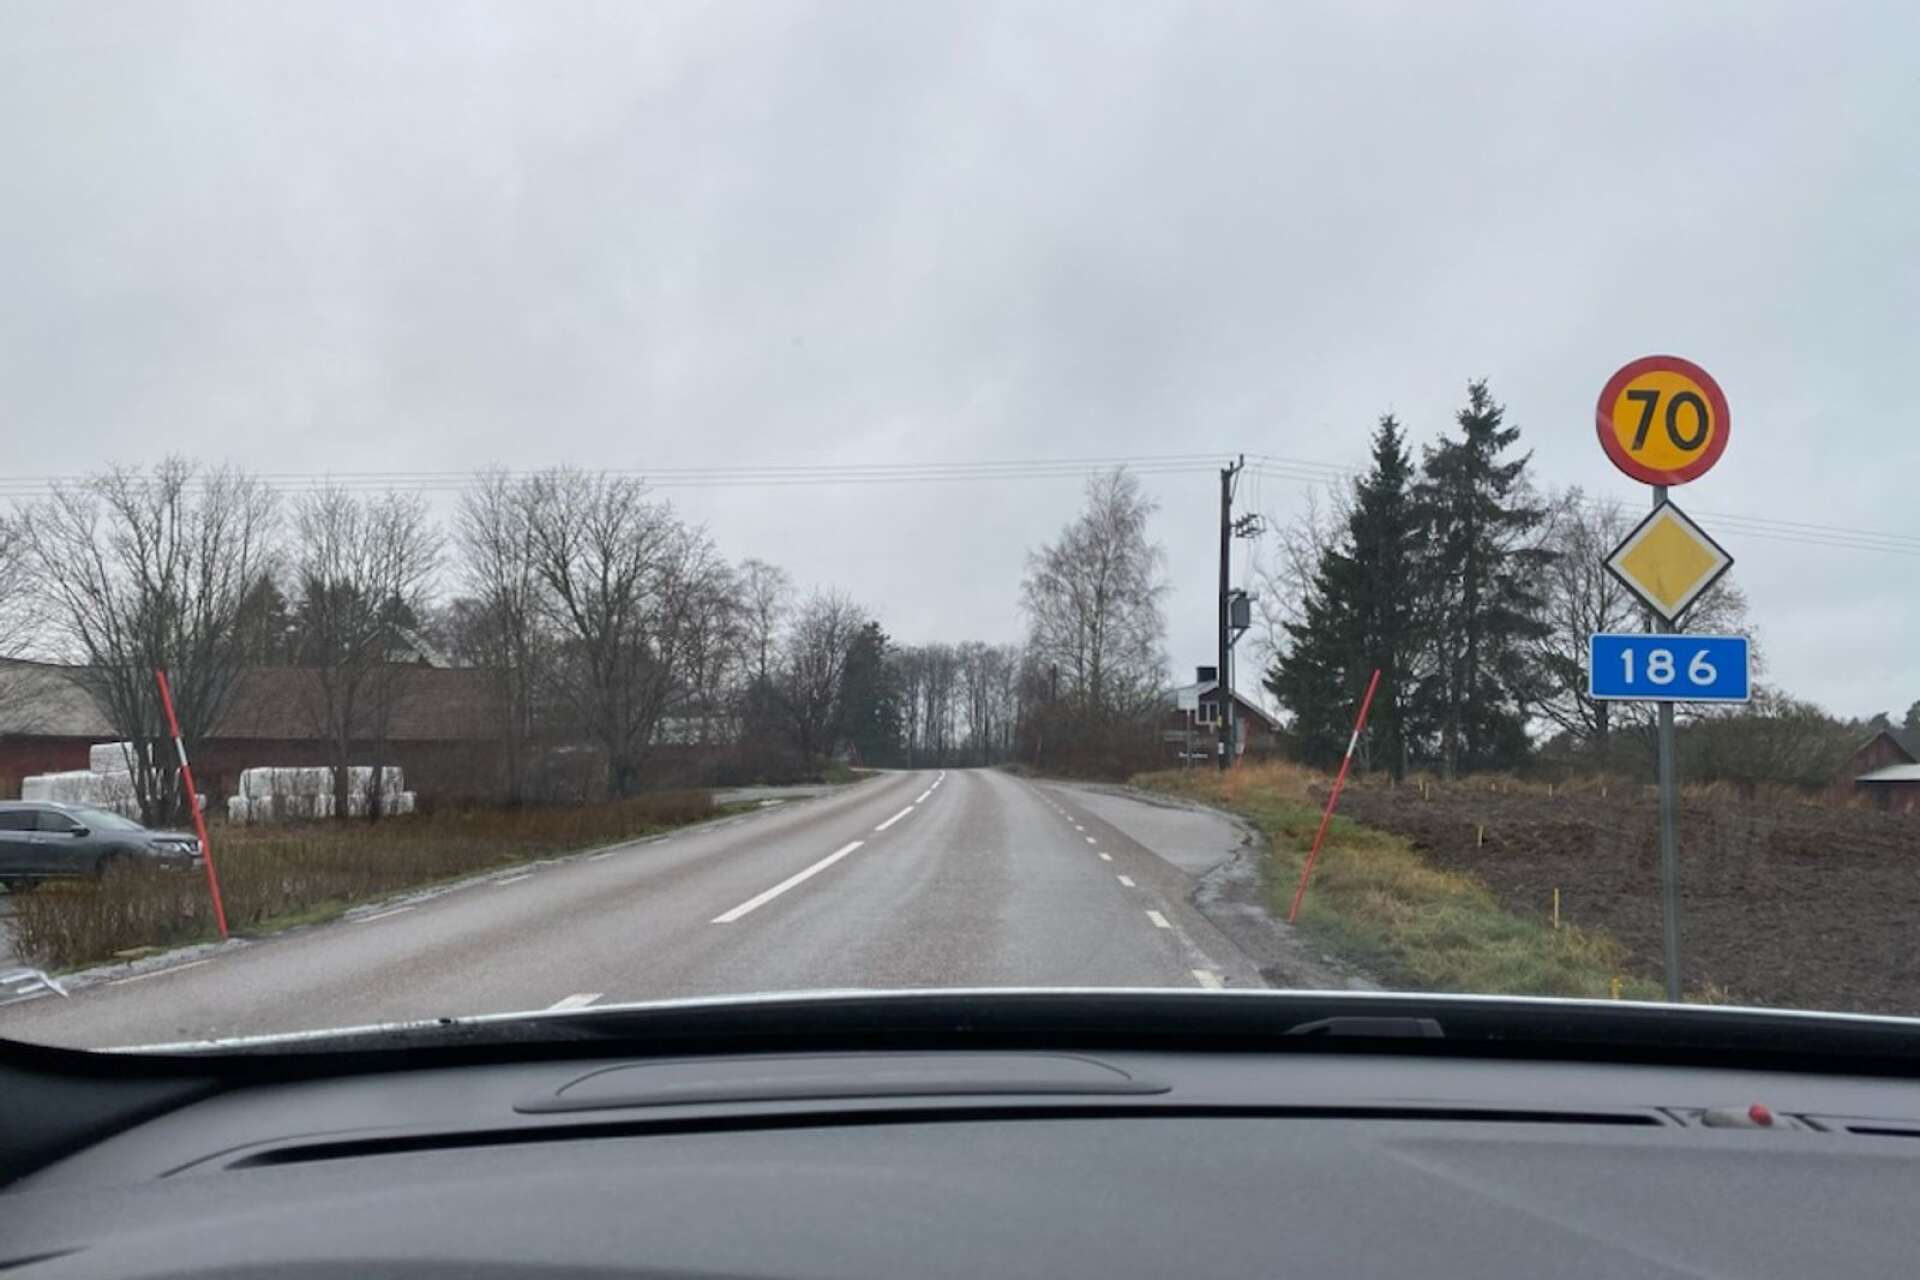 Väg 186, mellan Jonslund och Nossebro tillhör de mest olycksdrabbade vägarna i Essunga kommun. 